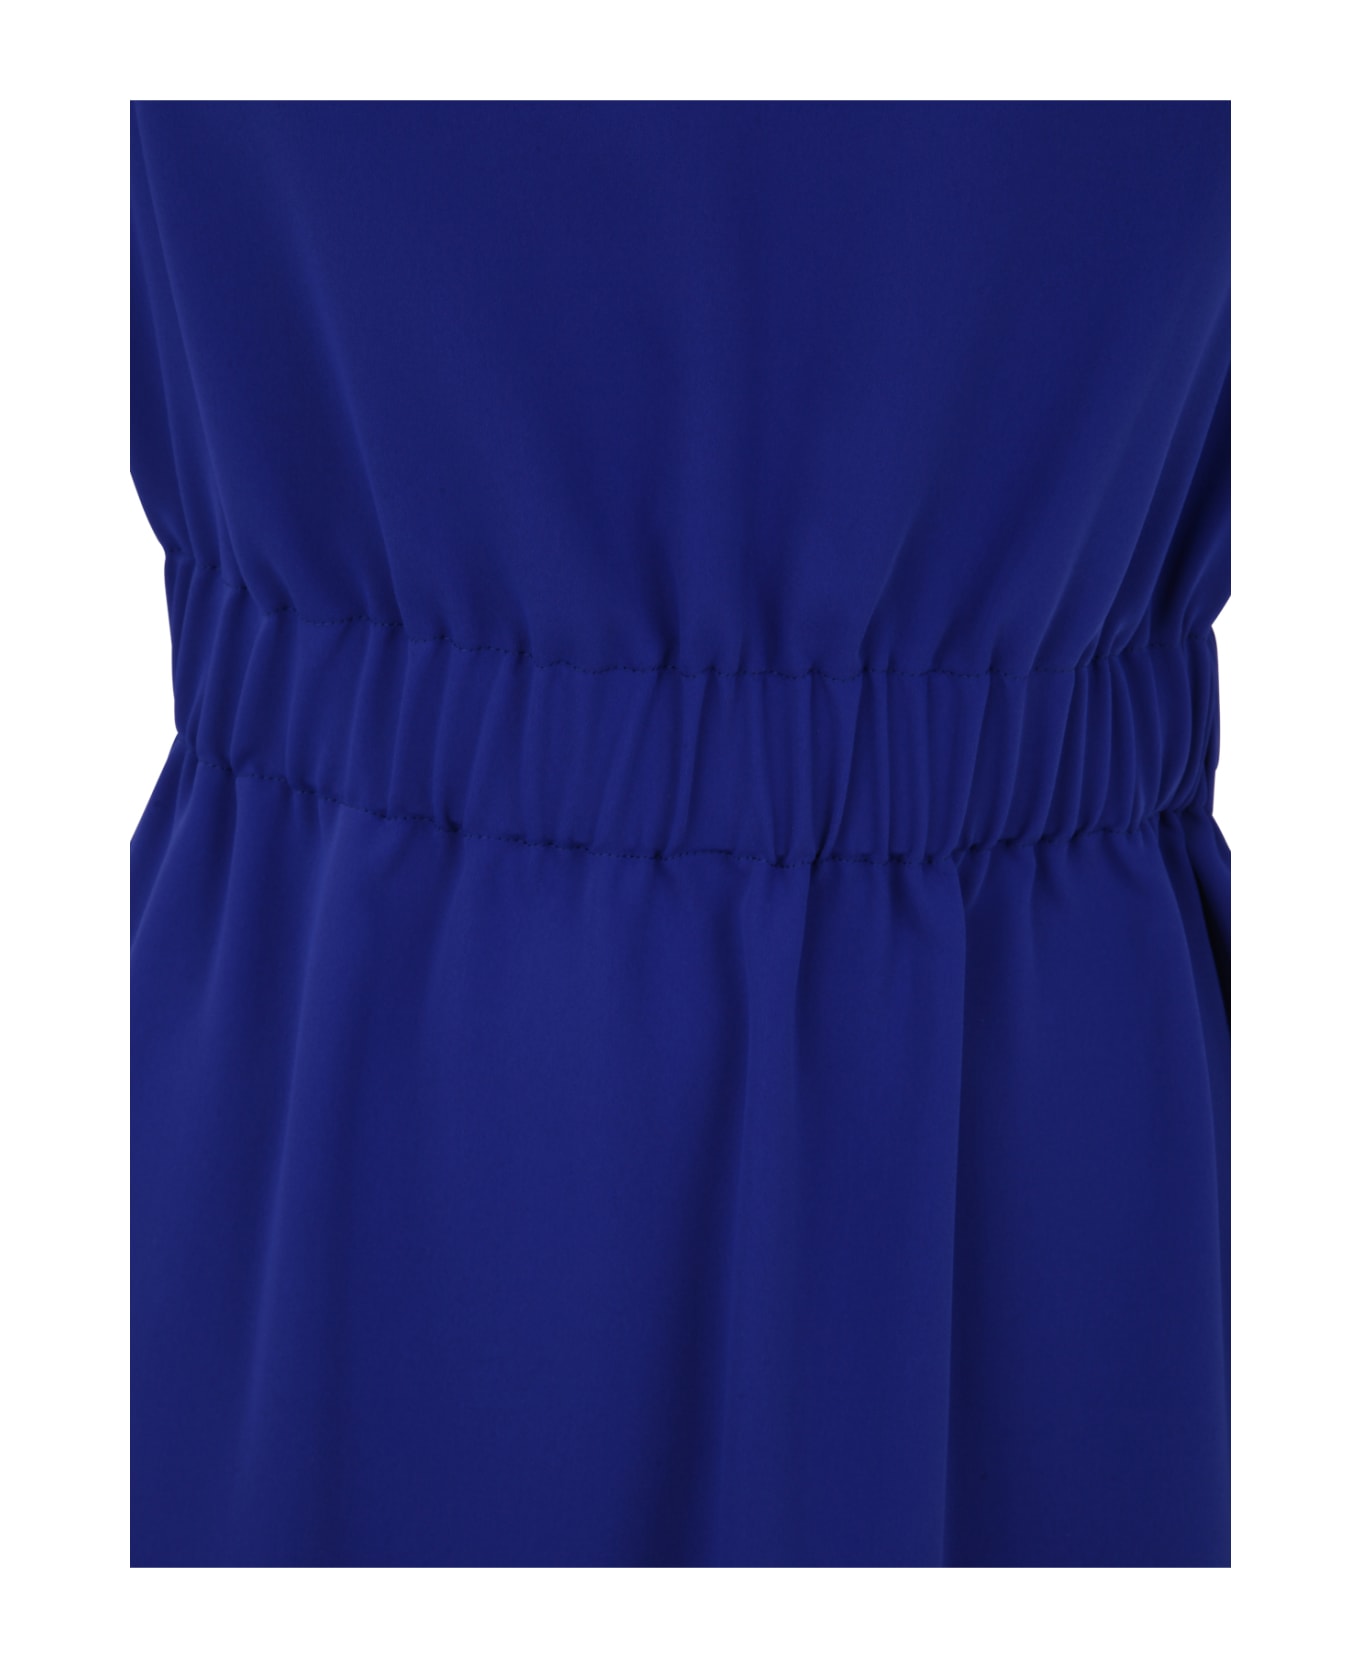 Parosh Cady Dress - Bluette